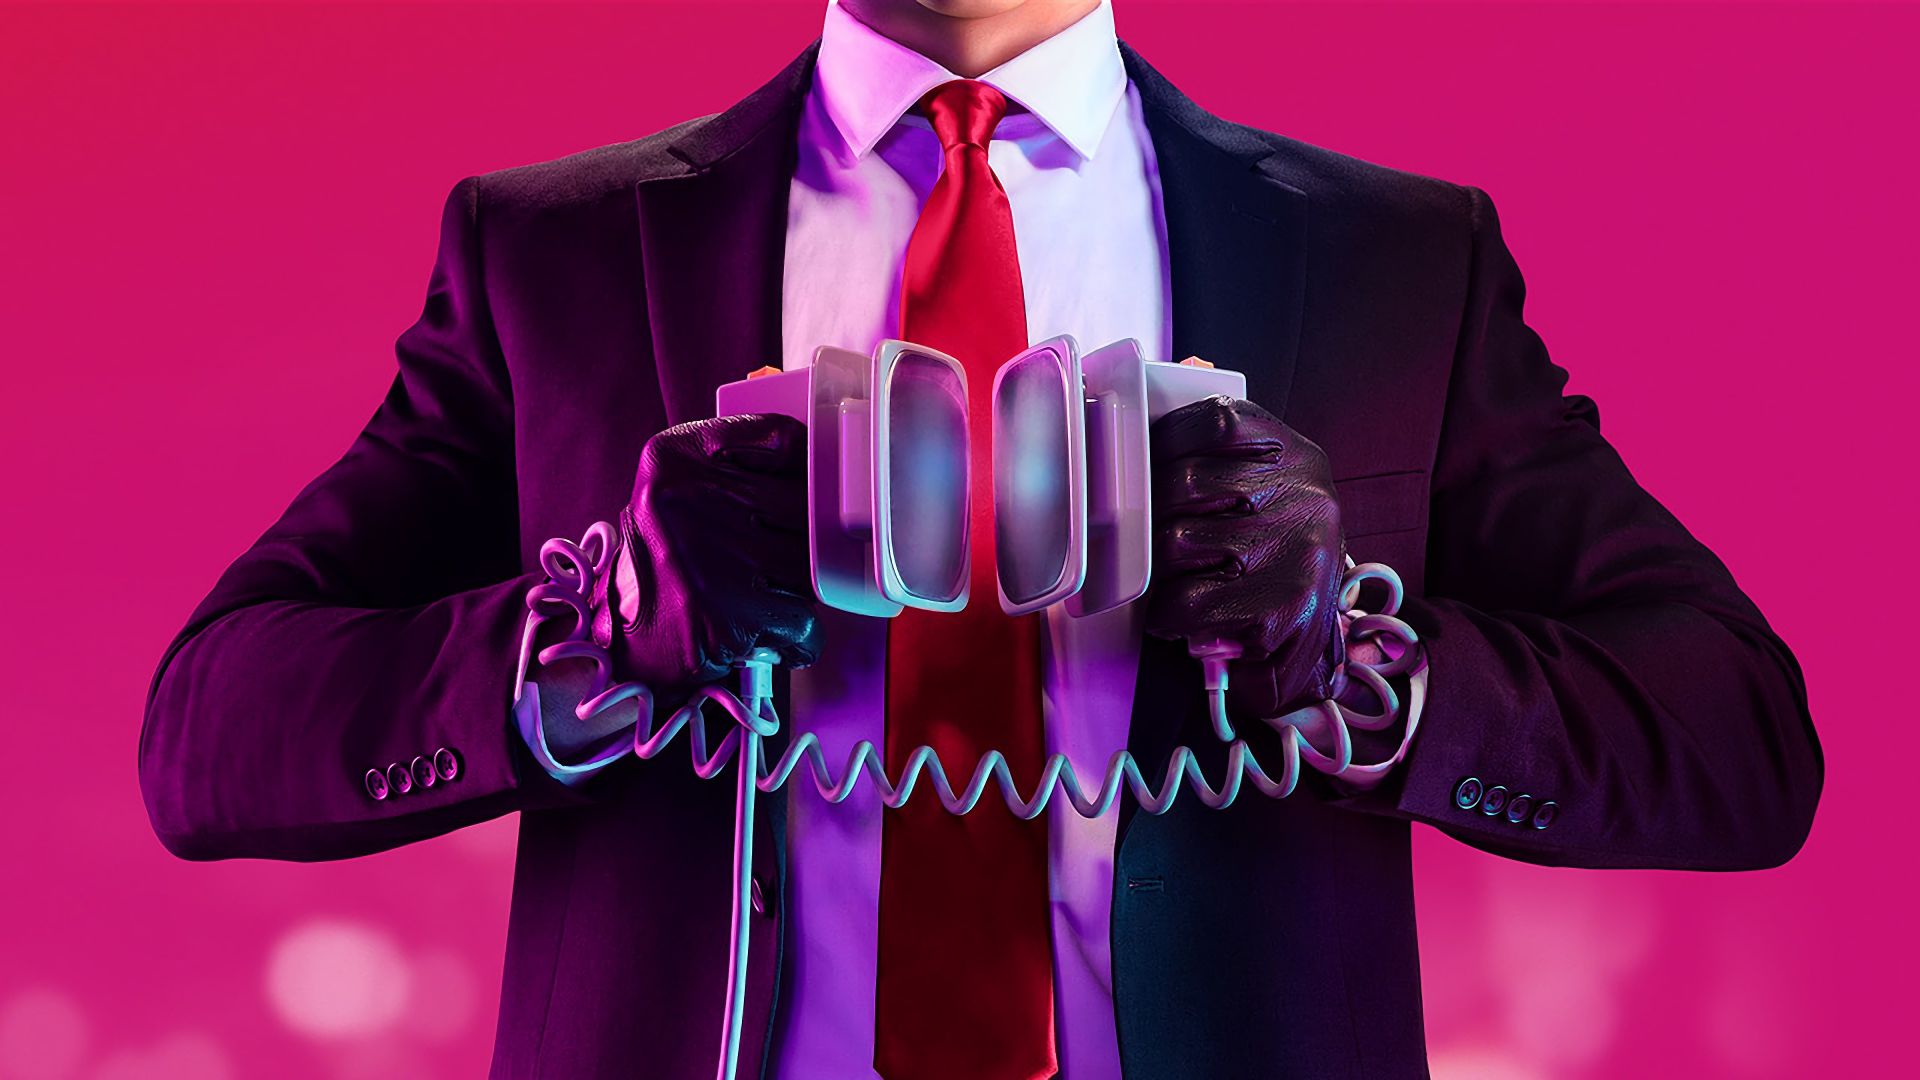 Хитмен 2, Hitman 2, E3 2018, artwork, poster, 4K (horizontal)